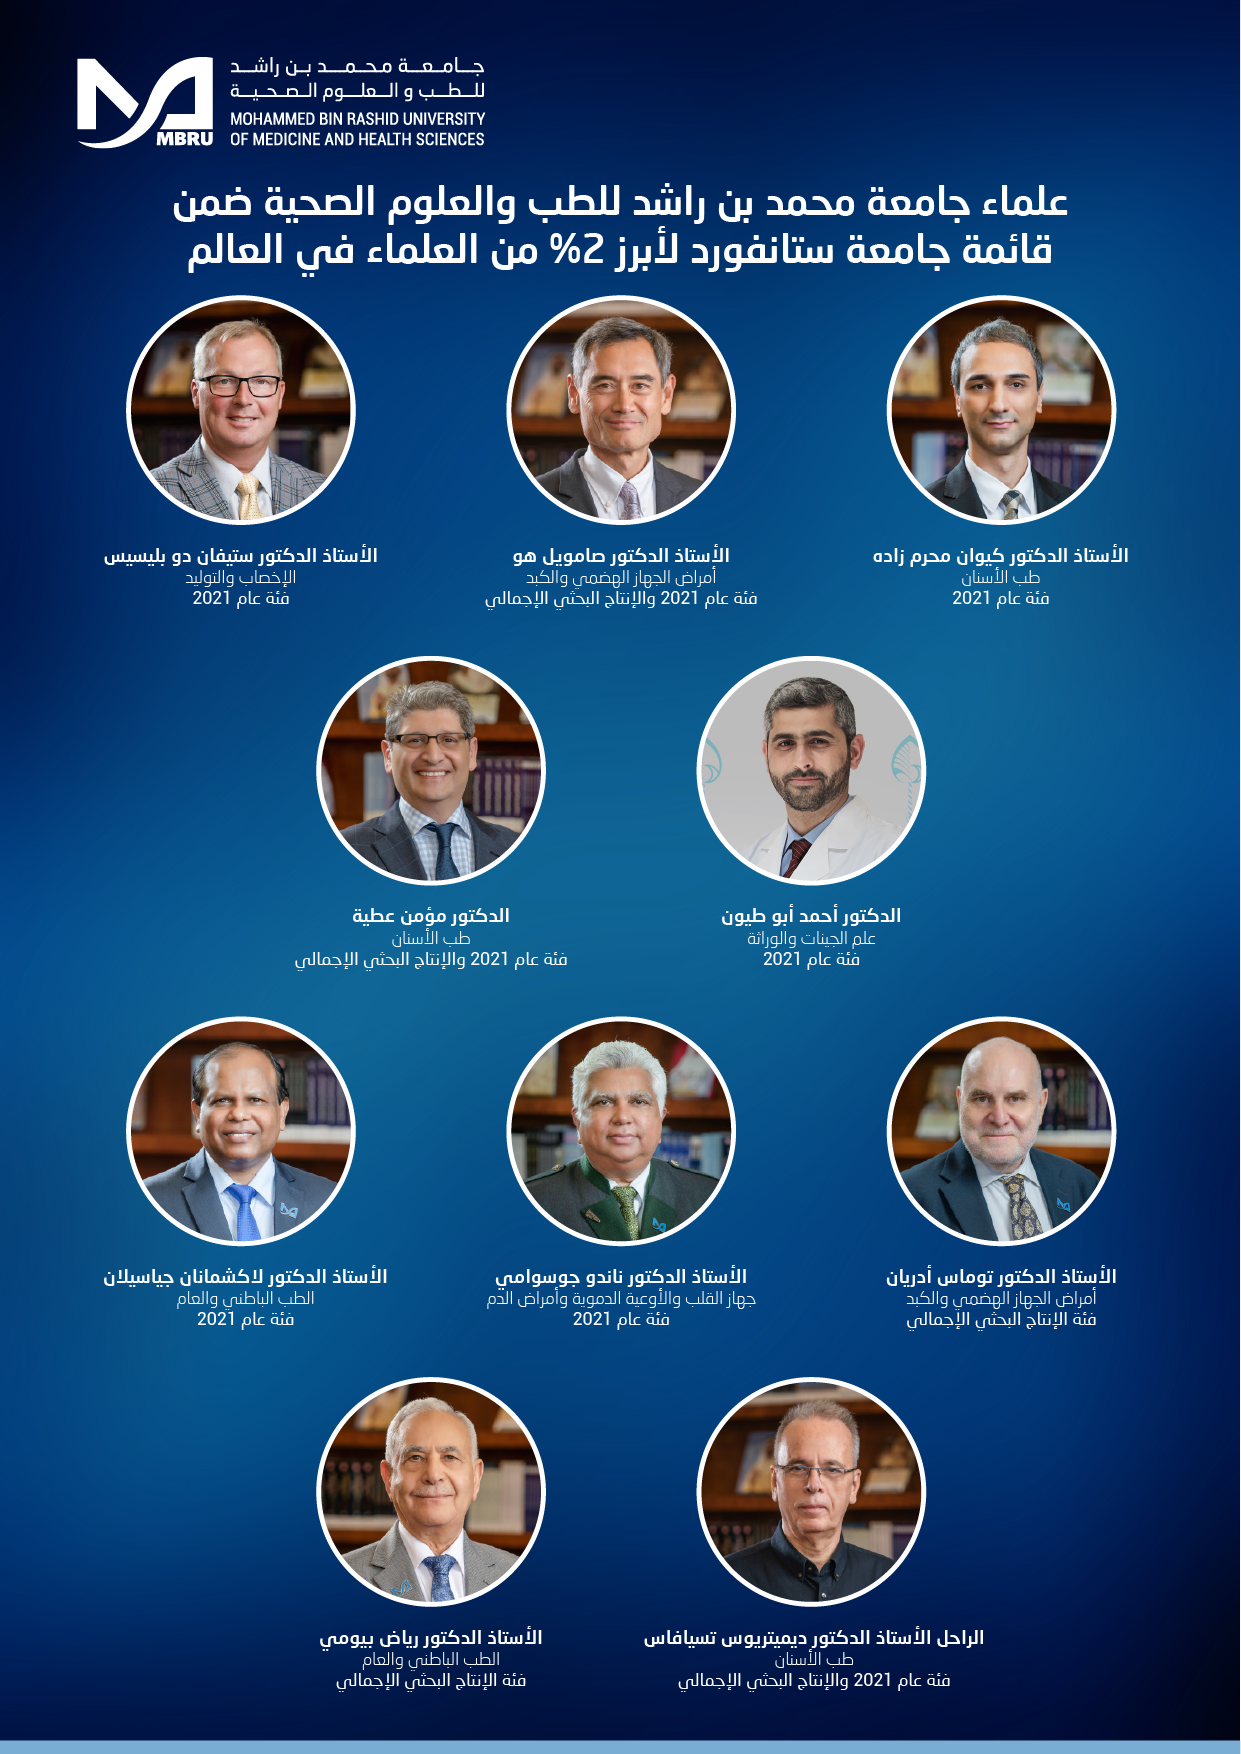 9 باحثين من جامعة محمد بن راشد للطب والعلوم الصحية على قائمة جامعة ستانفورد لأبرز علماء العالم